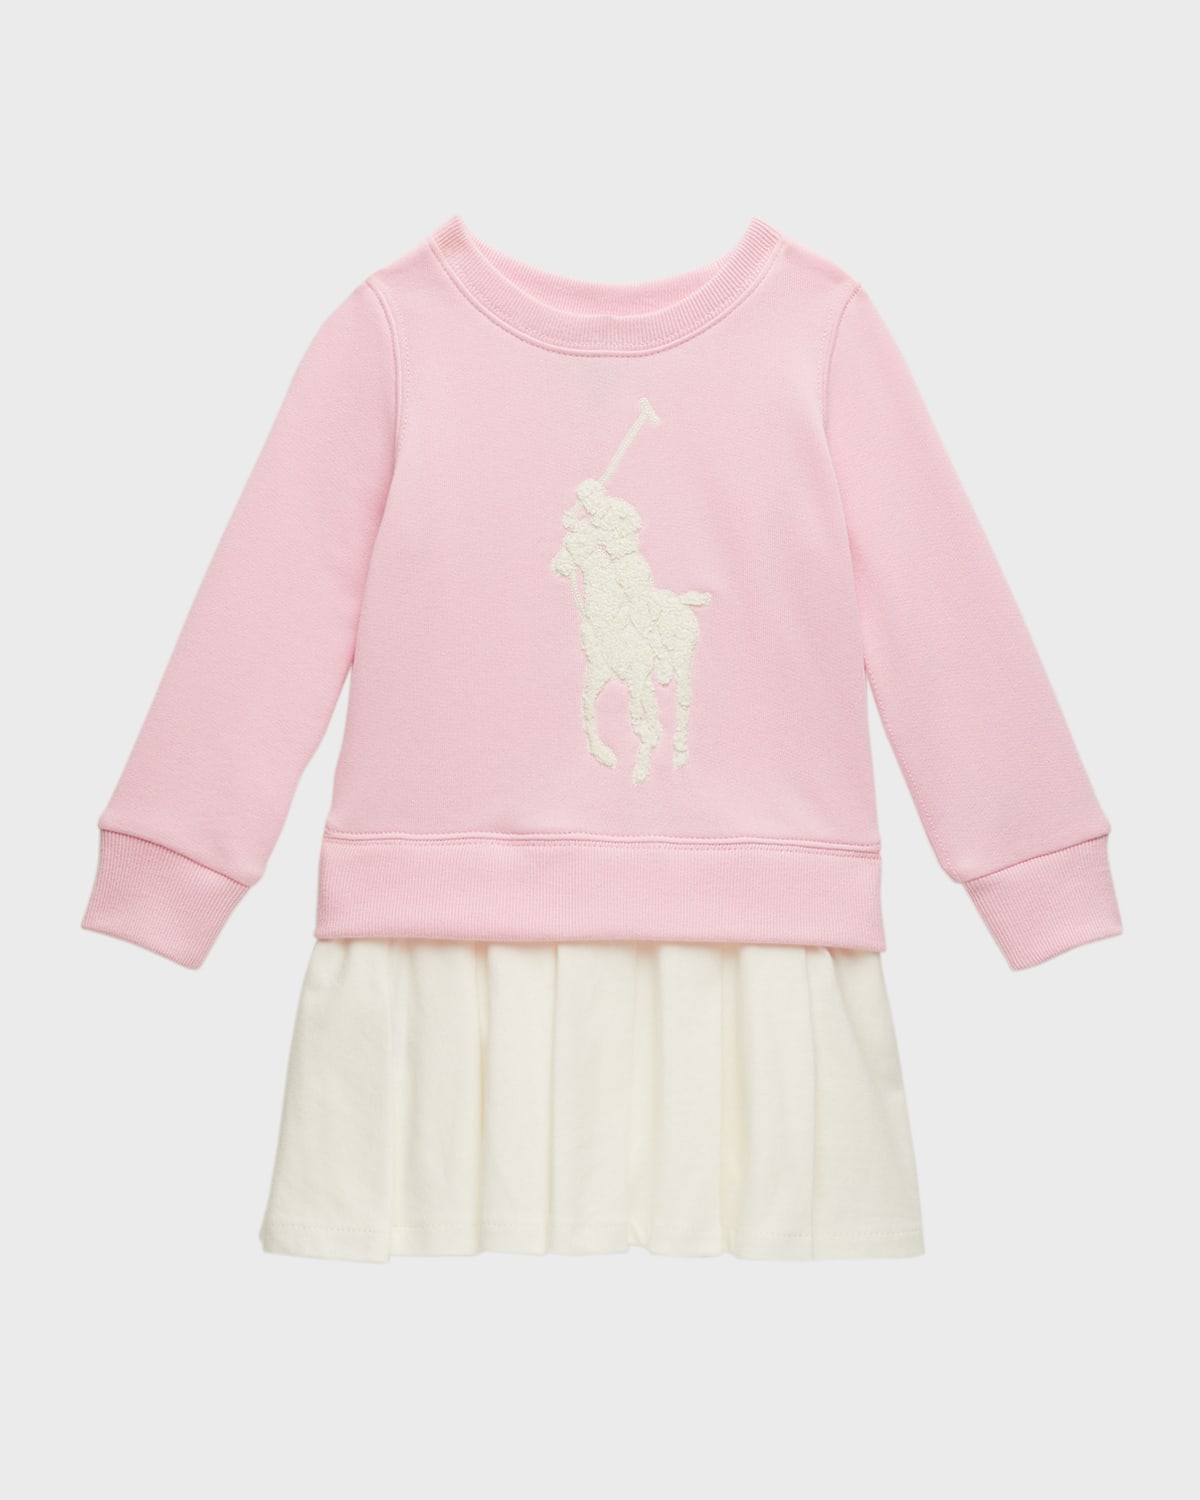 Big Pony Fleece Sweatshirt Dress, Size 2-3